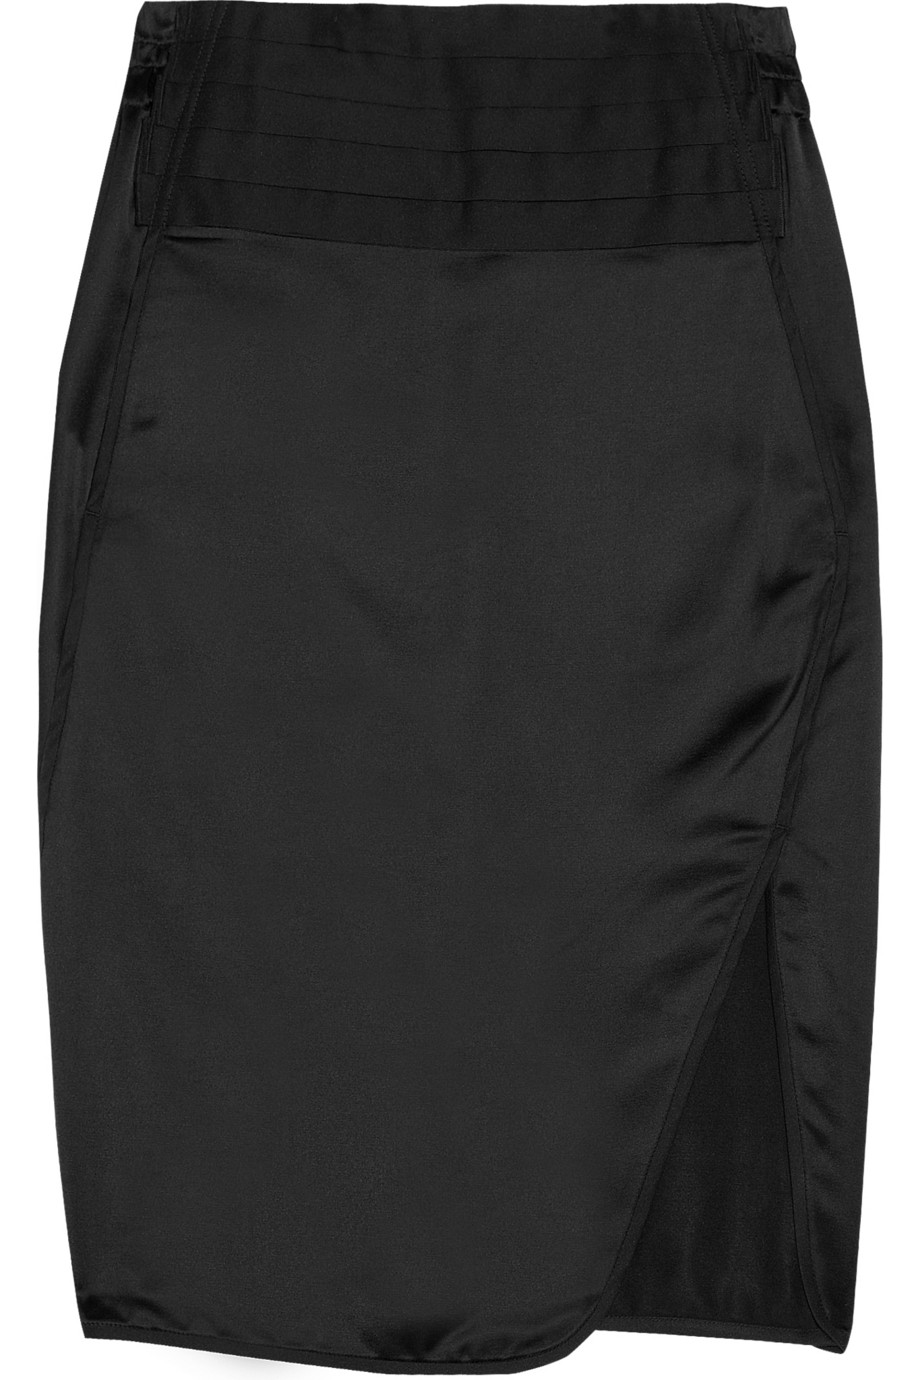 Alexander Wang Cummerbund Skirt in Black - Lyst